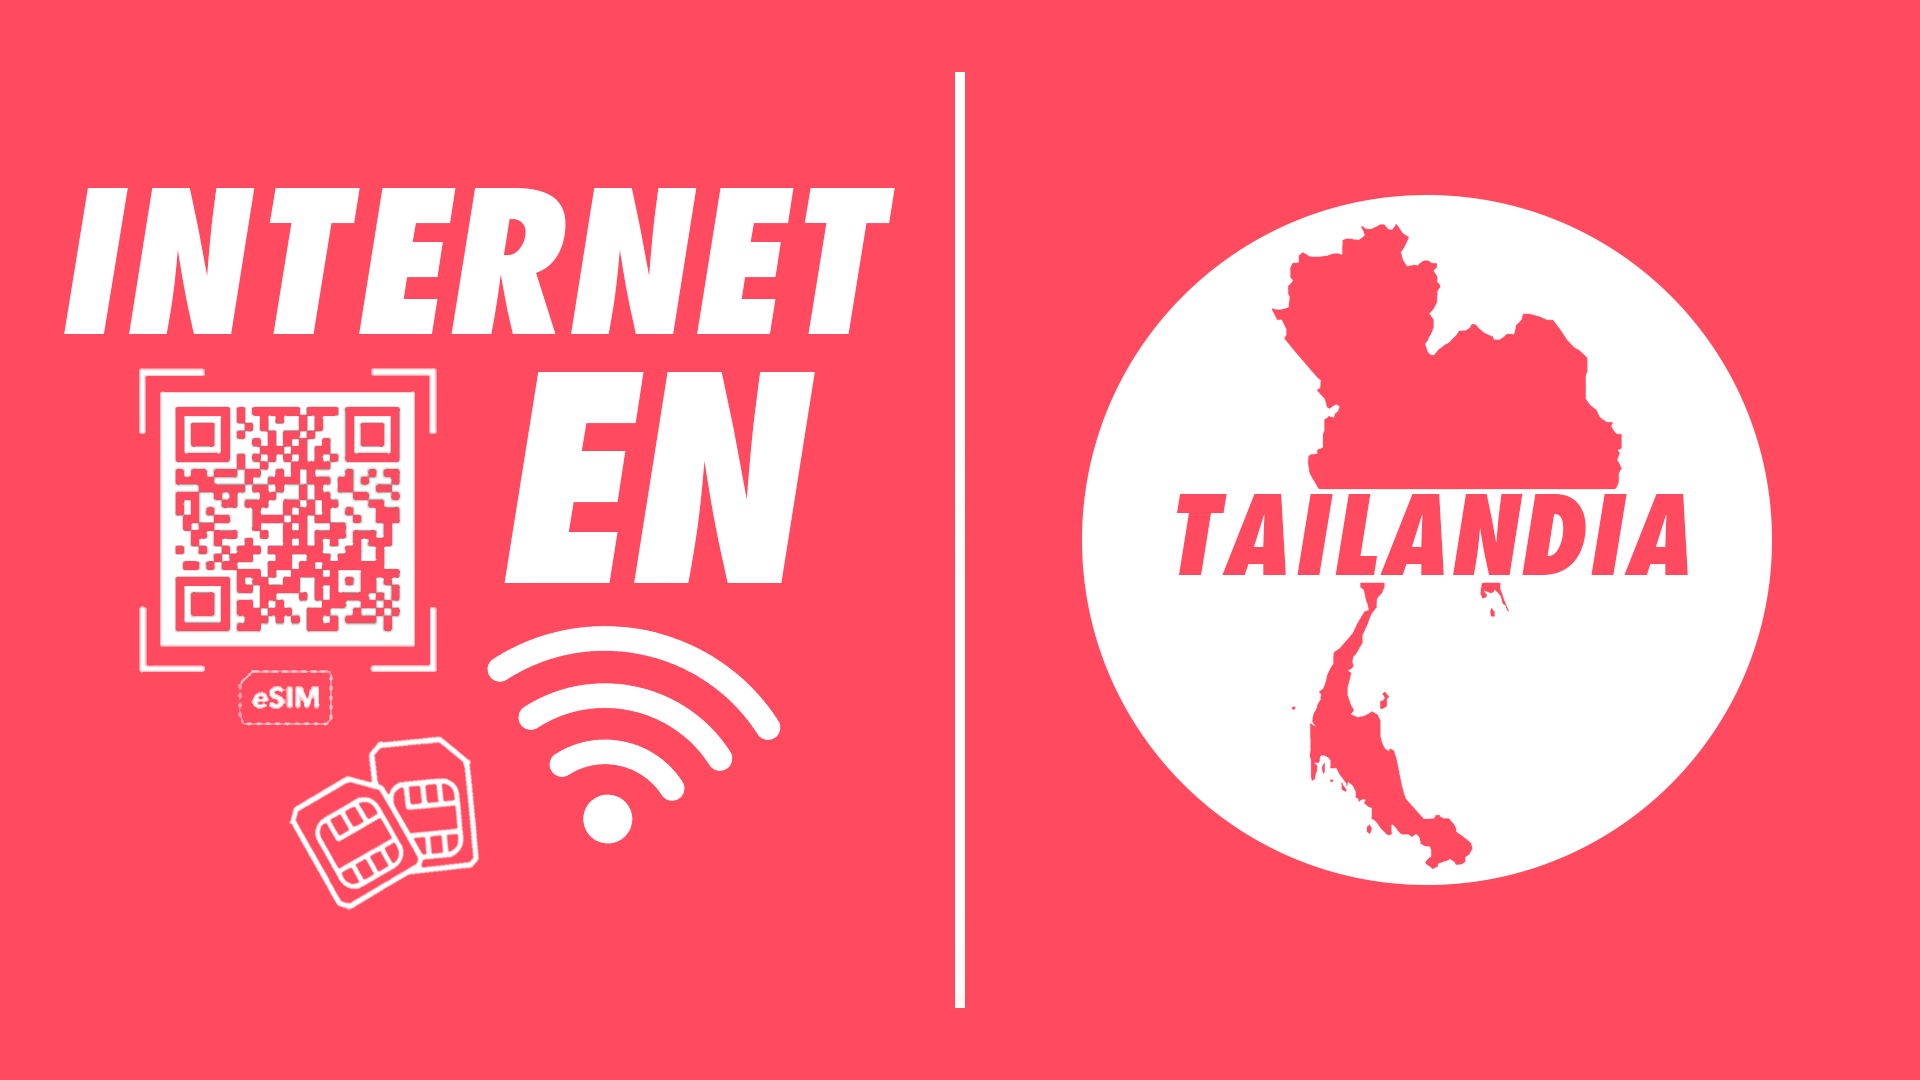 Cómo tener internet en Tailandia esim